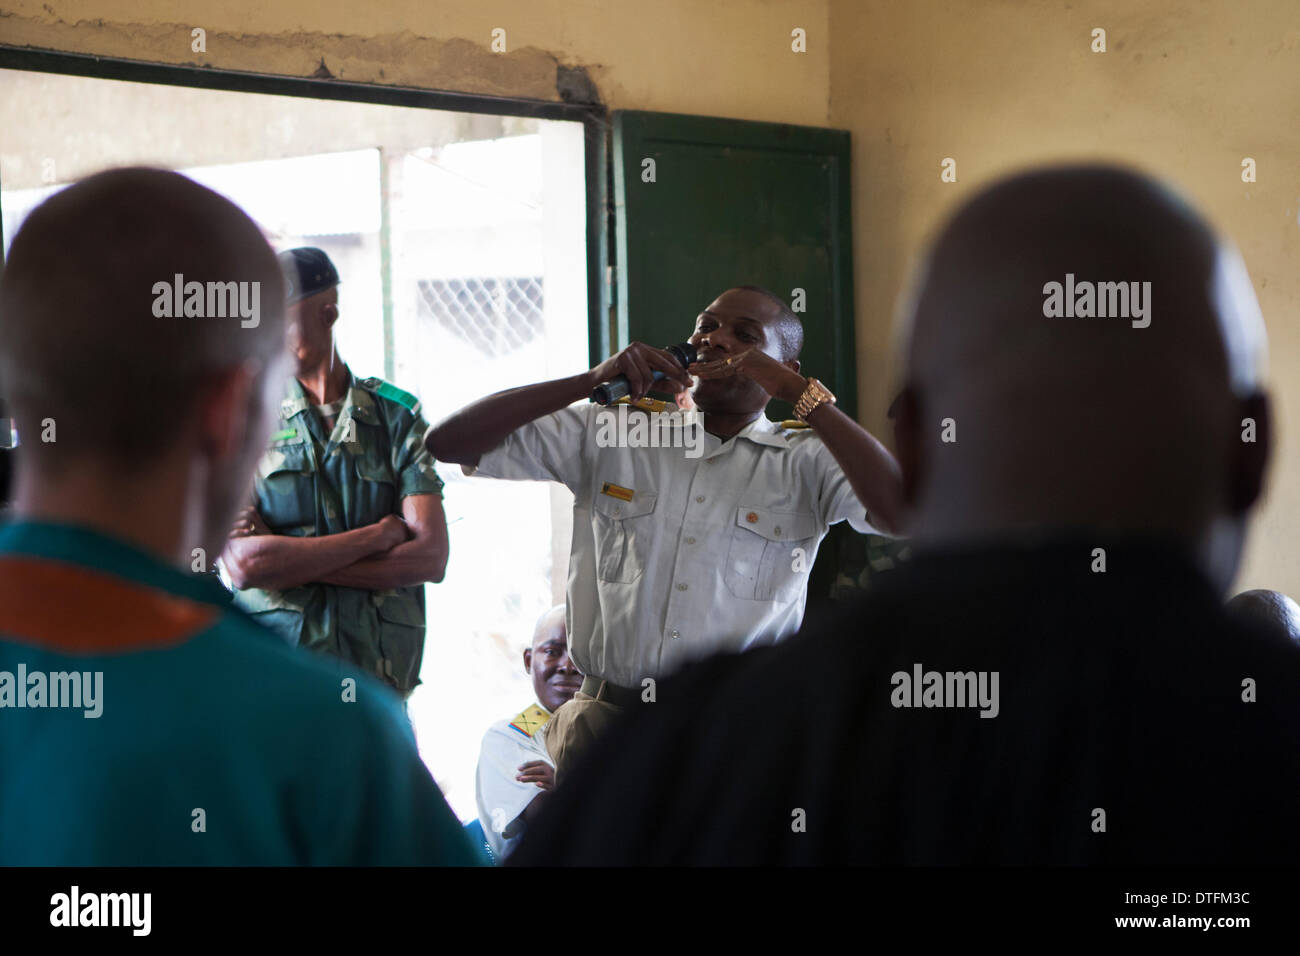 Kinshasa, NELLA REPUBBLICA DEMOCRATICA DEL CONGO. 17 feb 2014. Nkulu Prosecuter Katende durante la prova di oggi contro Giosuè francese accusato di aver ucciso il suo compagno di cella Tjostolv Moland a Kinshasa, NELLA REPUBBLICA DEMOCRATICA DEL CONGO.Il verdetto è previsto a cadere il mercoledì dopo la corte ha ascoltato testimonianze di medici esperti sulla sua salute oggi. © Rey T. Byhre/Alamy Live News Credito: Rey T. Byhre/Alamy Live News Foto Stock